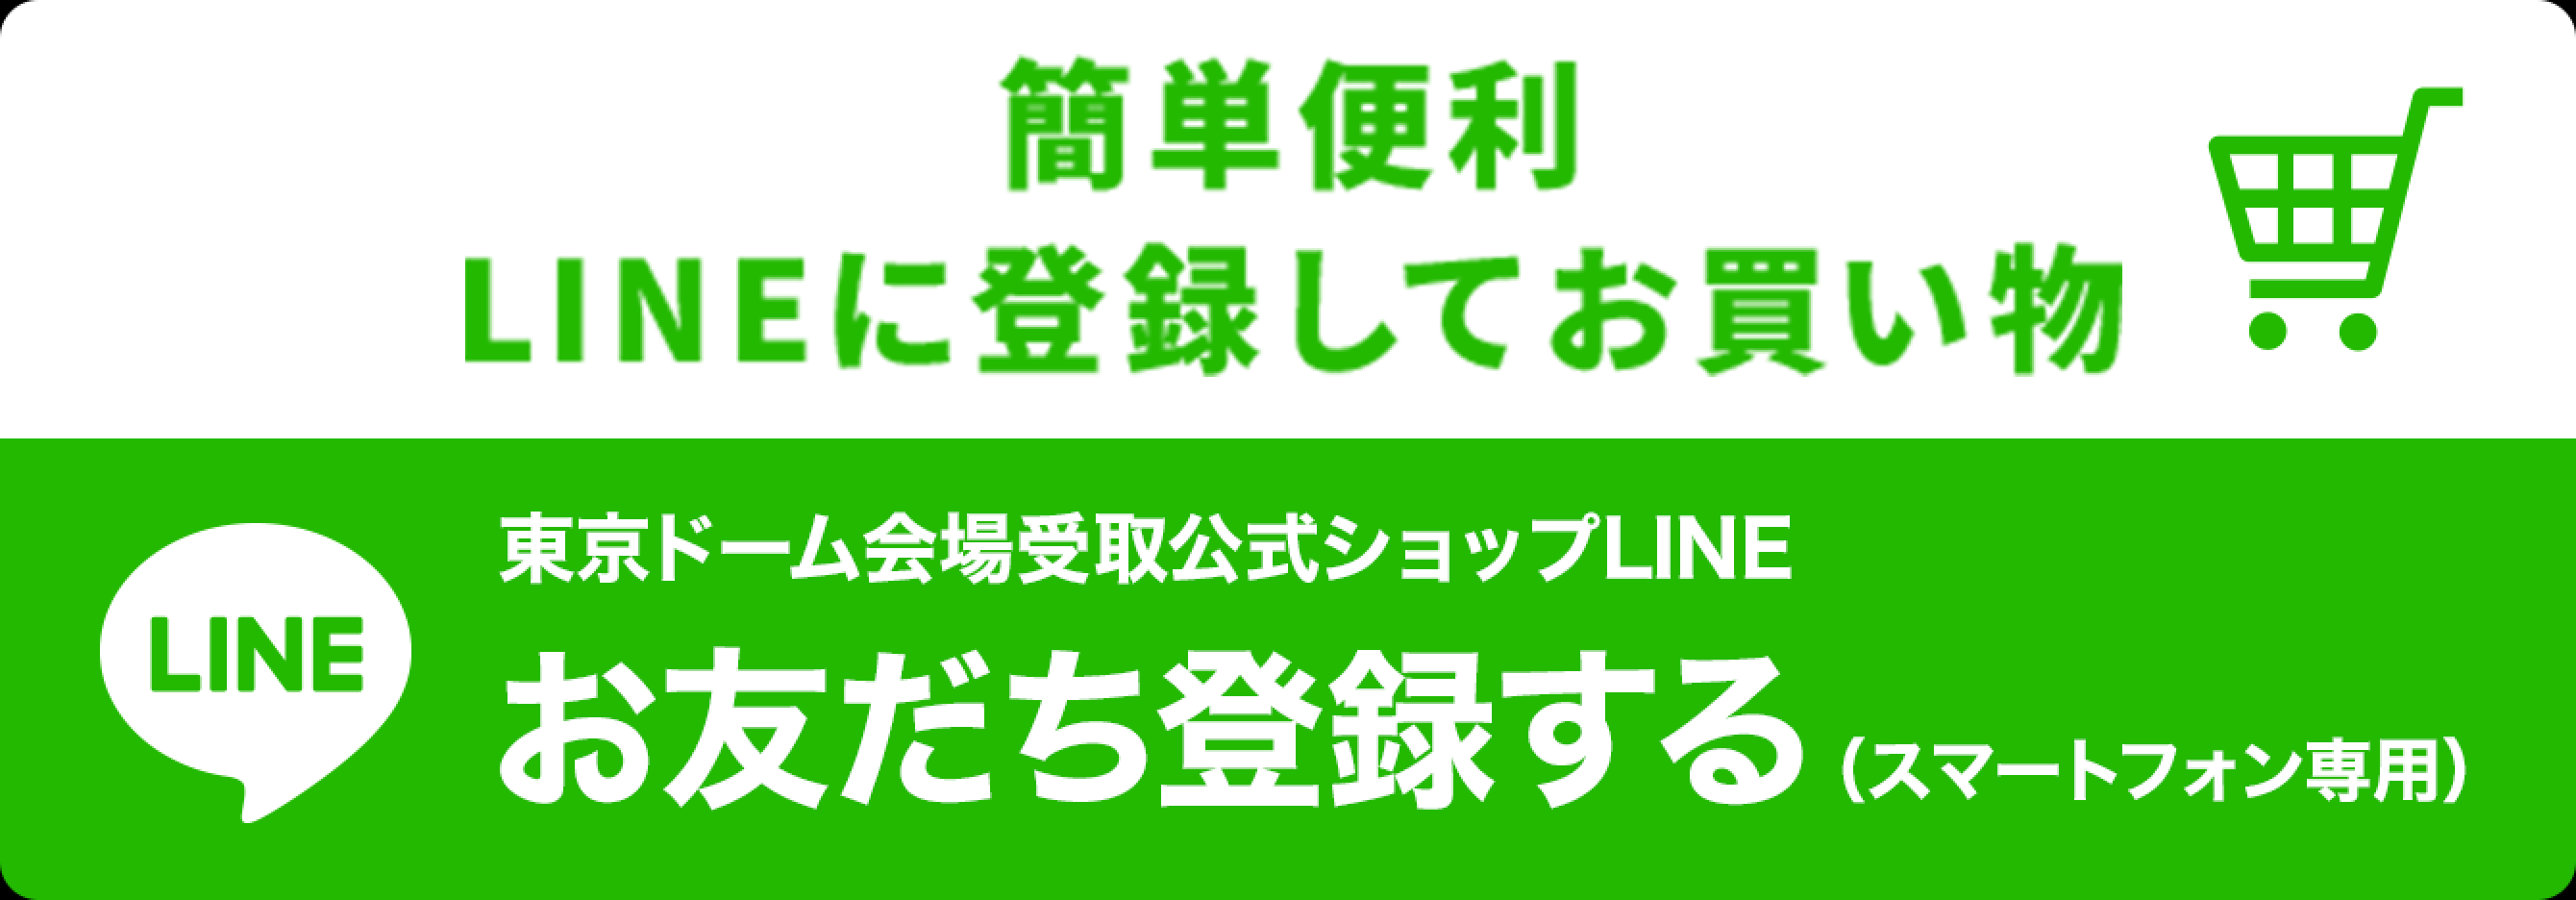 映画『ゴジラvsコング』Presents WRESTLE GRAND SLAM 東京ドーム会場受取公式ショップ_LINE登録